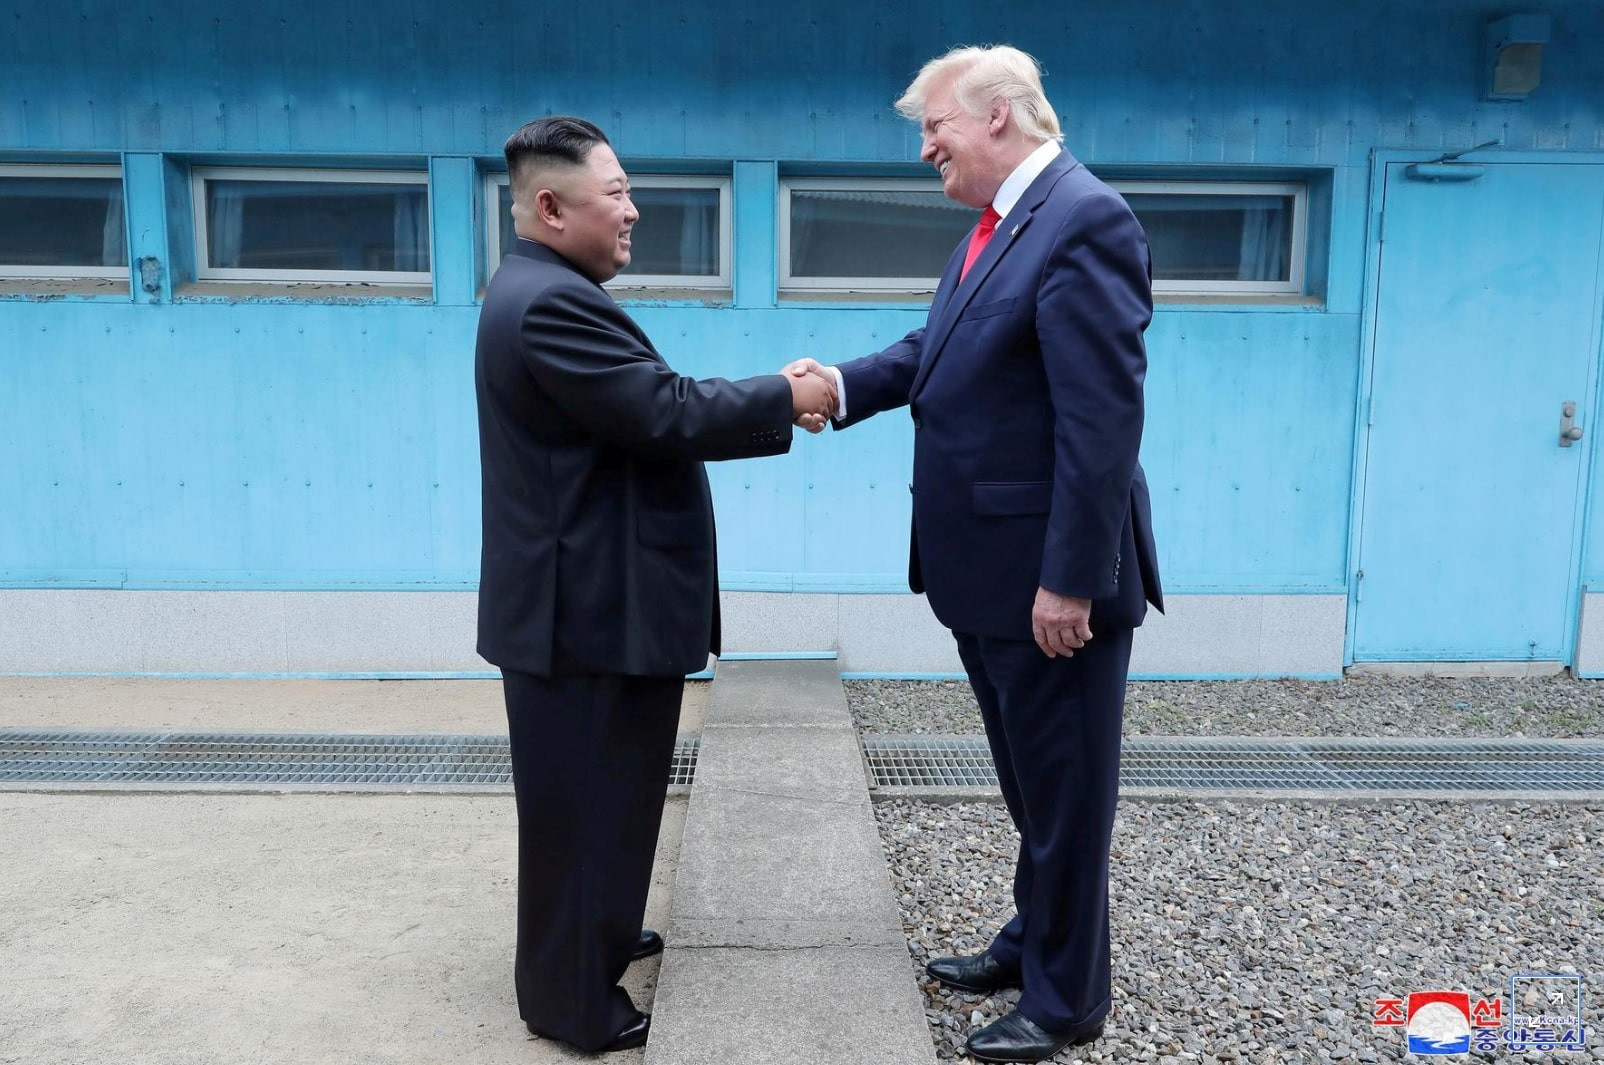 Tổng thống Mỹ Donald Trump bắt tay Chủ tịch Bắc Hàn Kim Jong Un tại biên giới hai miền Triều Tiên hôm 30/6/2019, Ảnh: KCNA